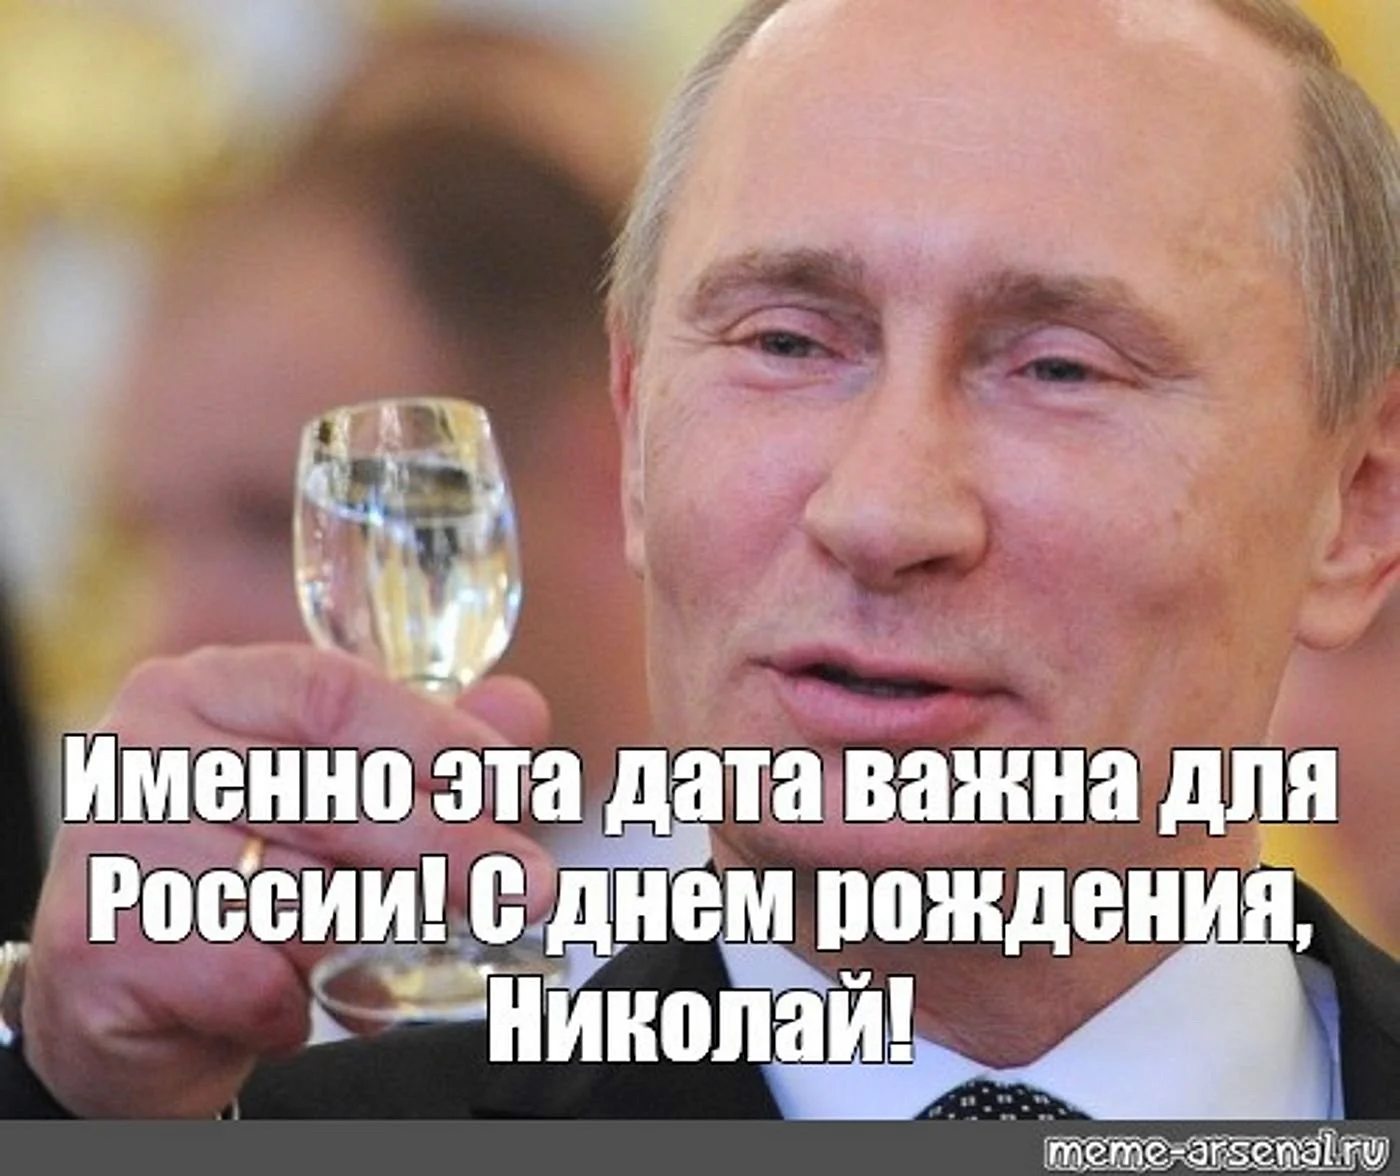 Лена с днем рождения Путин